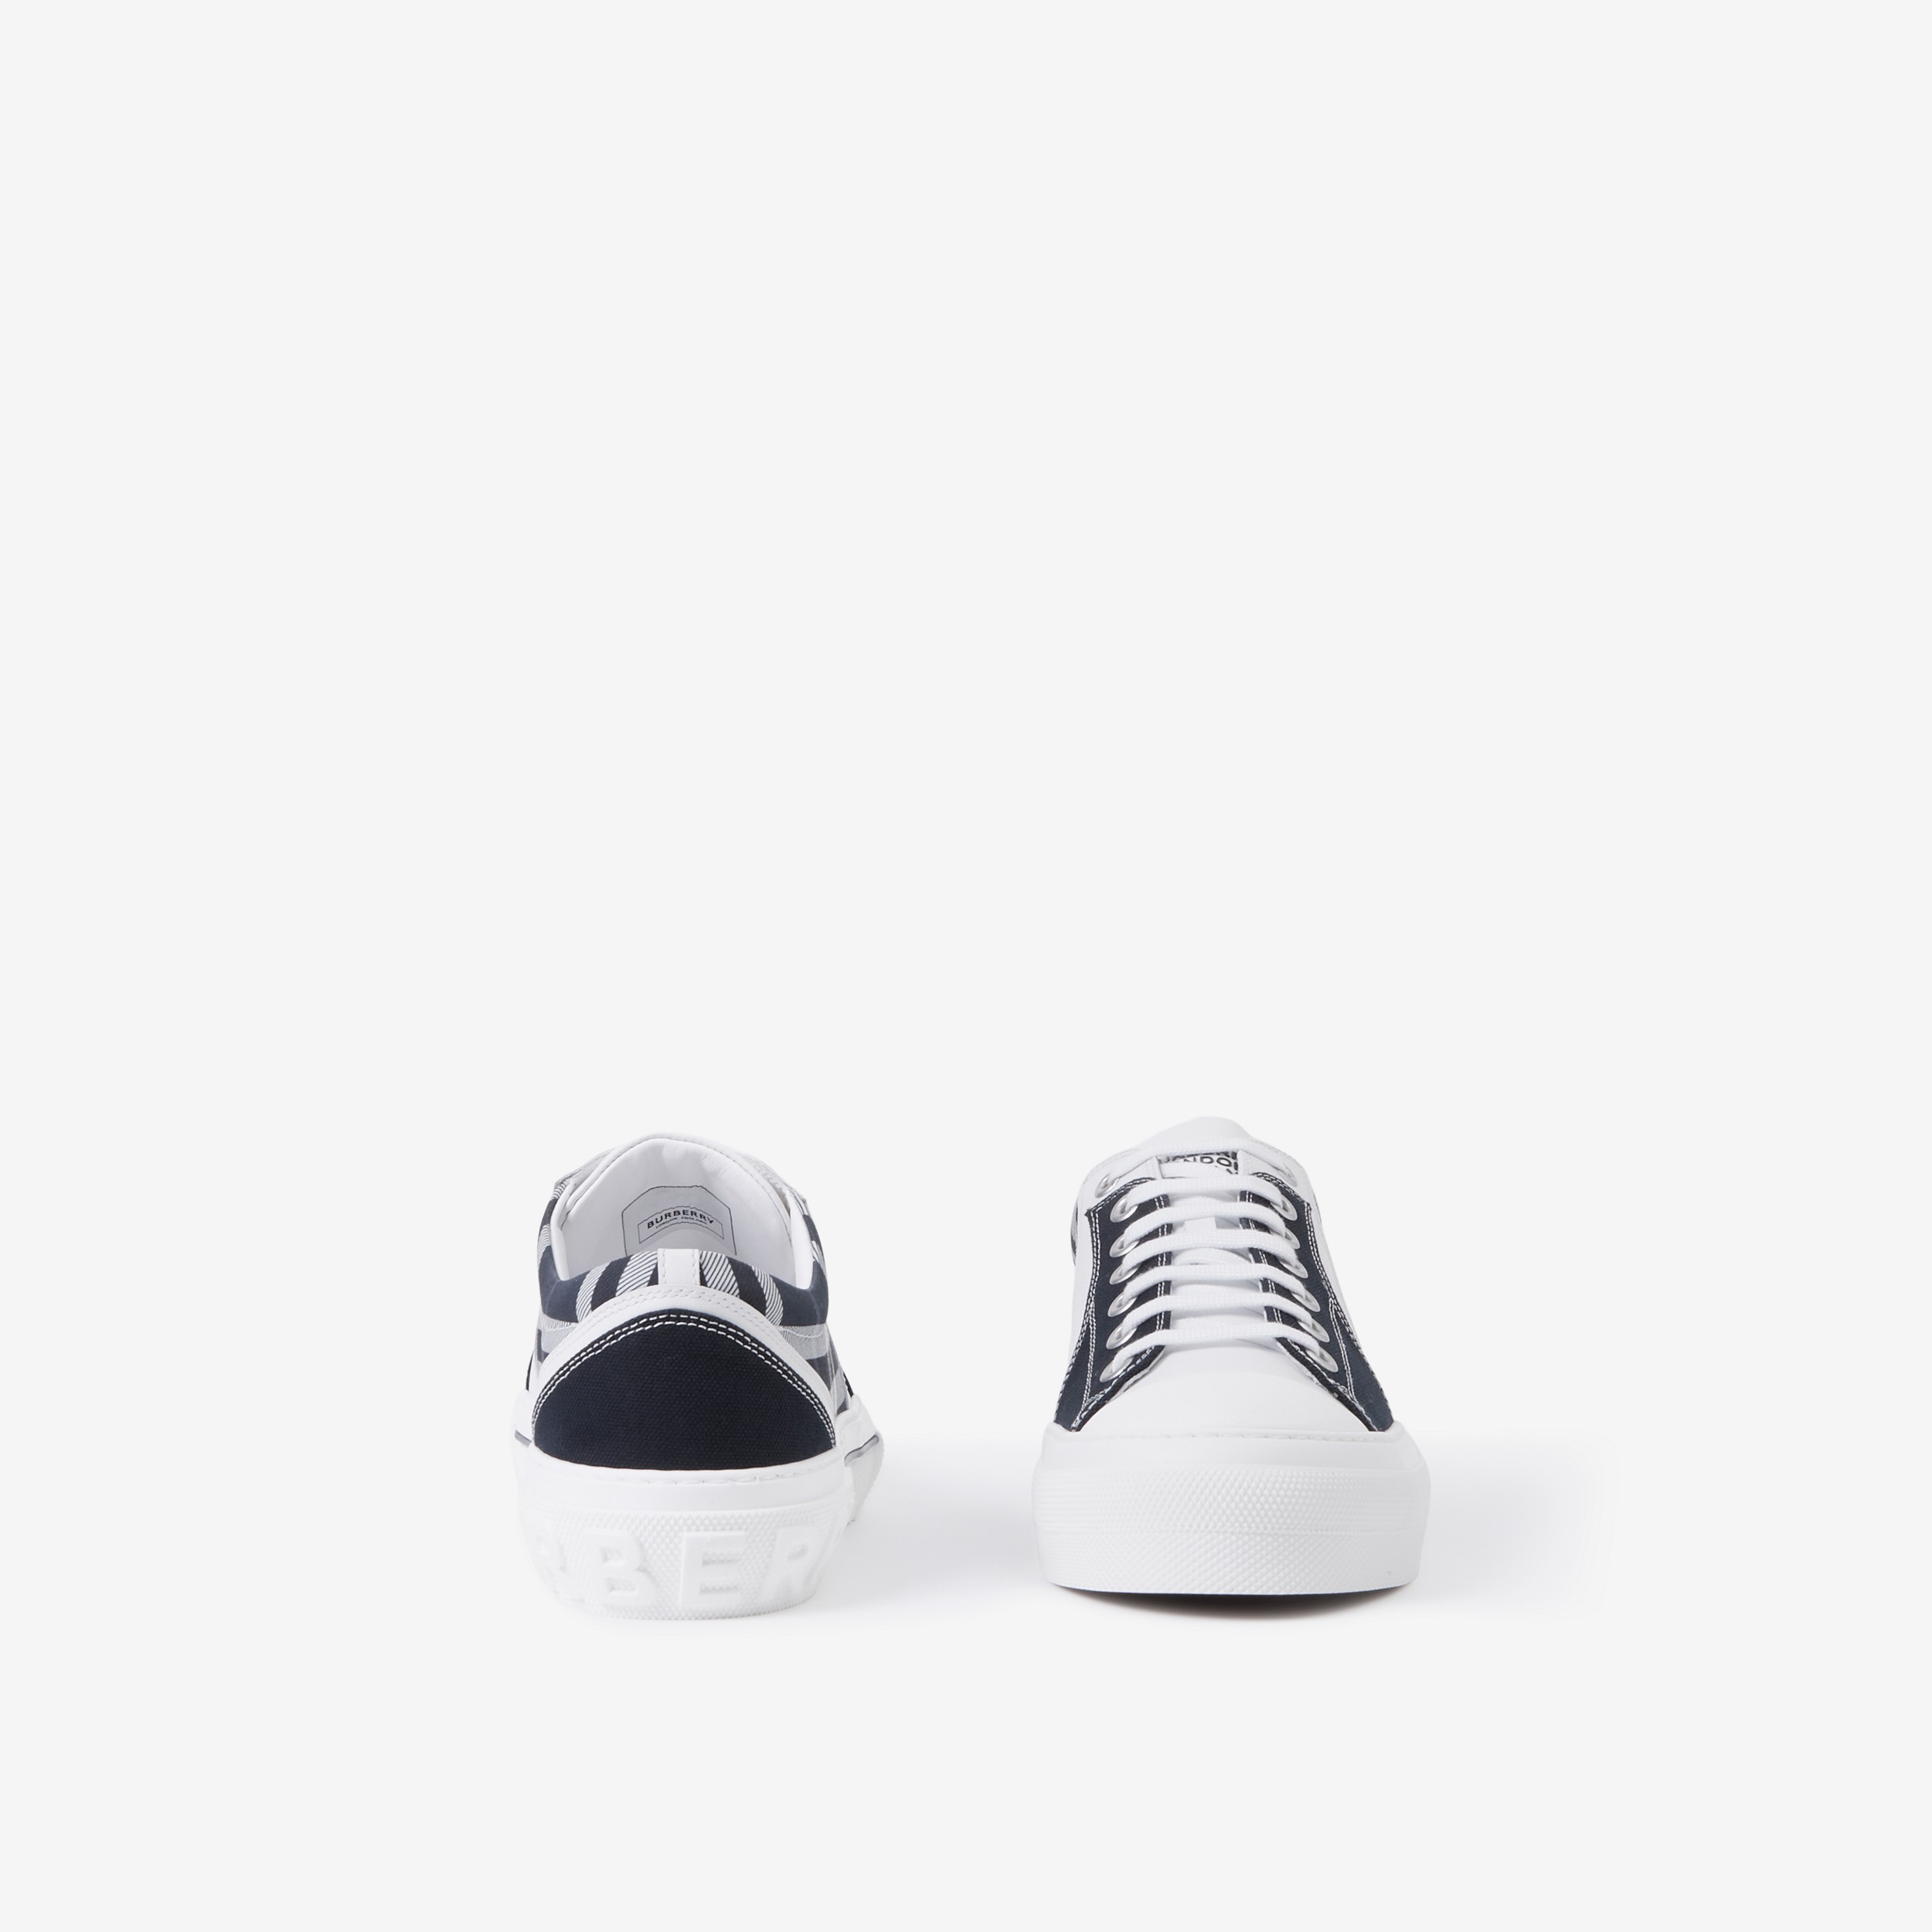 Sneaker in pelle, cotone e Check (Bianco/navy) - Uomo | Sito ufficiale Burberry® - 4